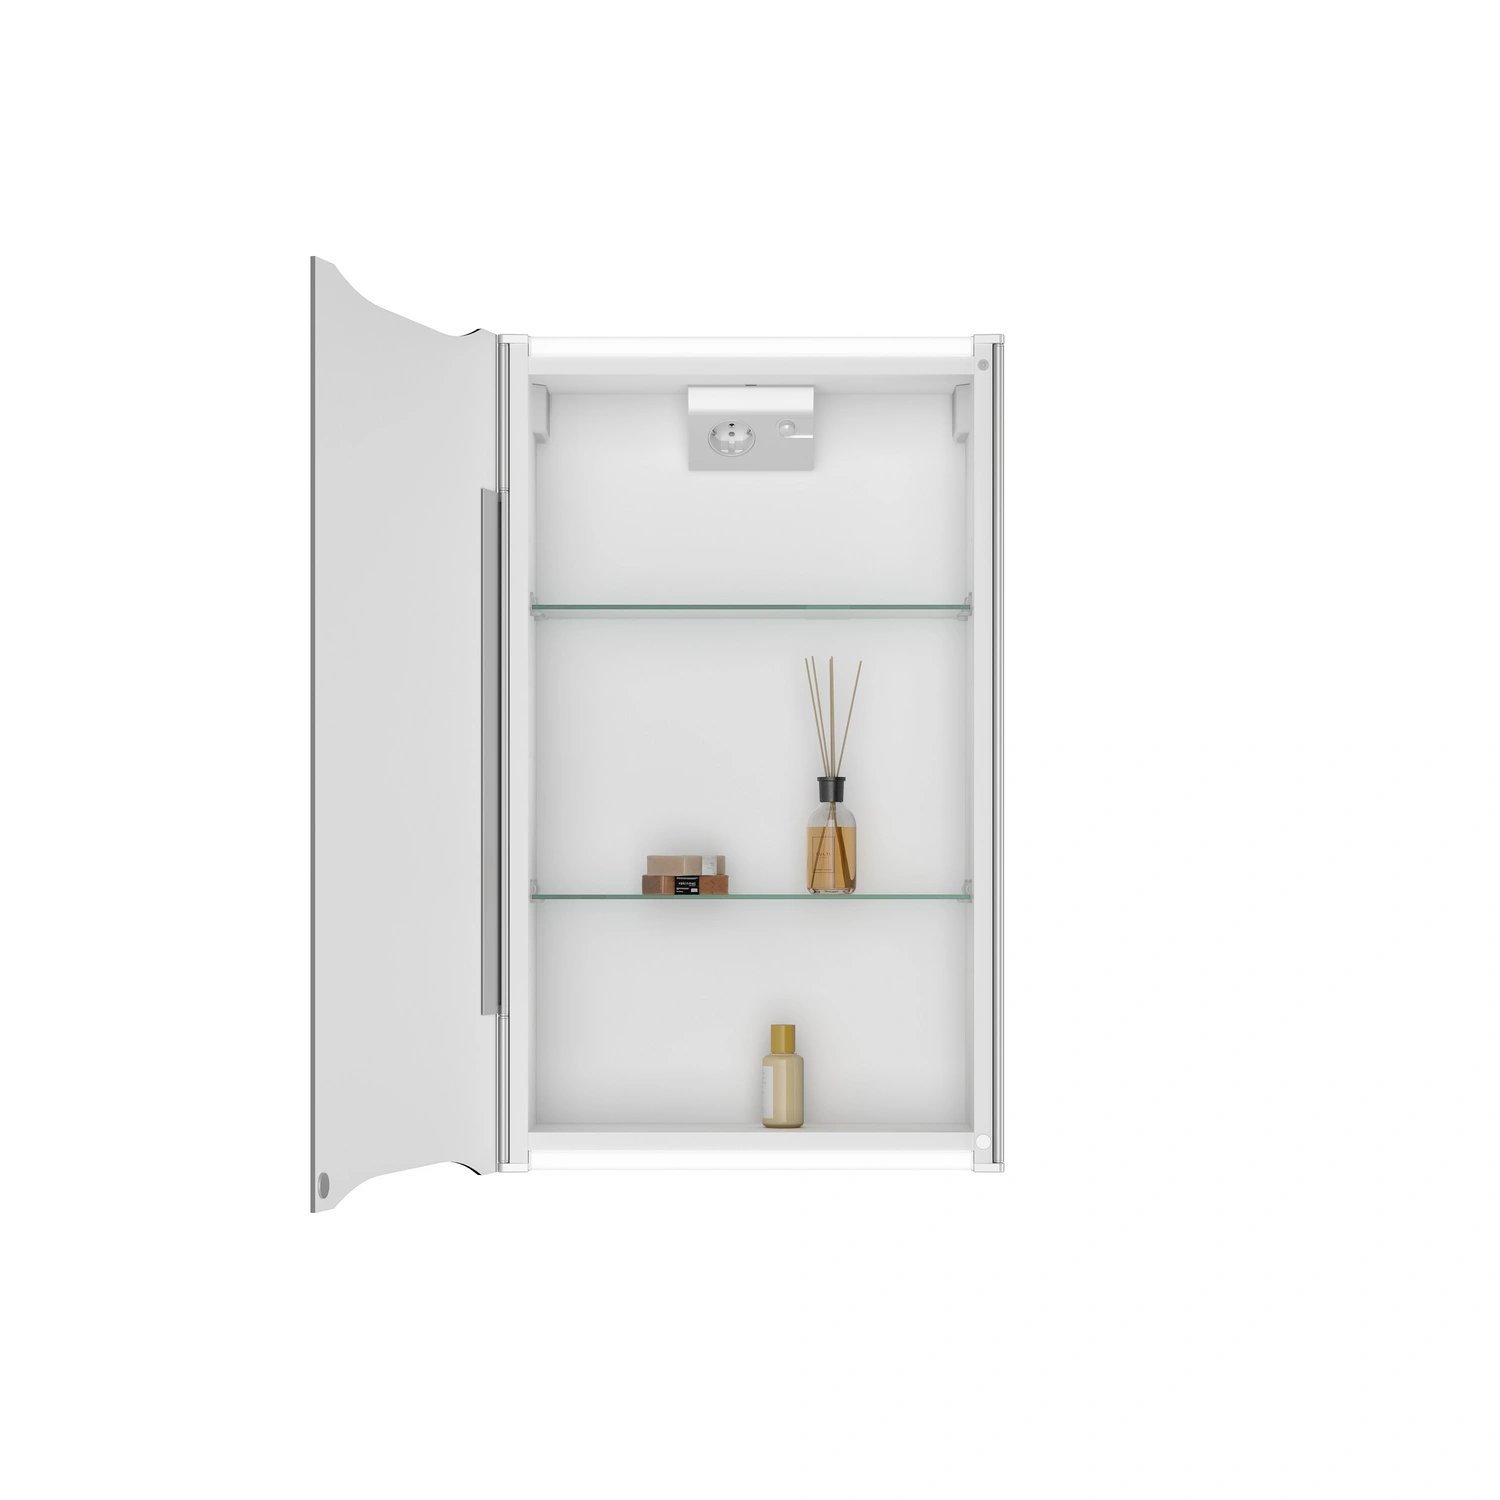 JOKEY Spiegelschrank, BxHxT: 44,6 x 73,5 x 16,8 cm, transparent/weiß | Spiegelschränke